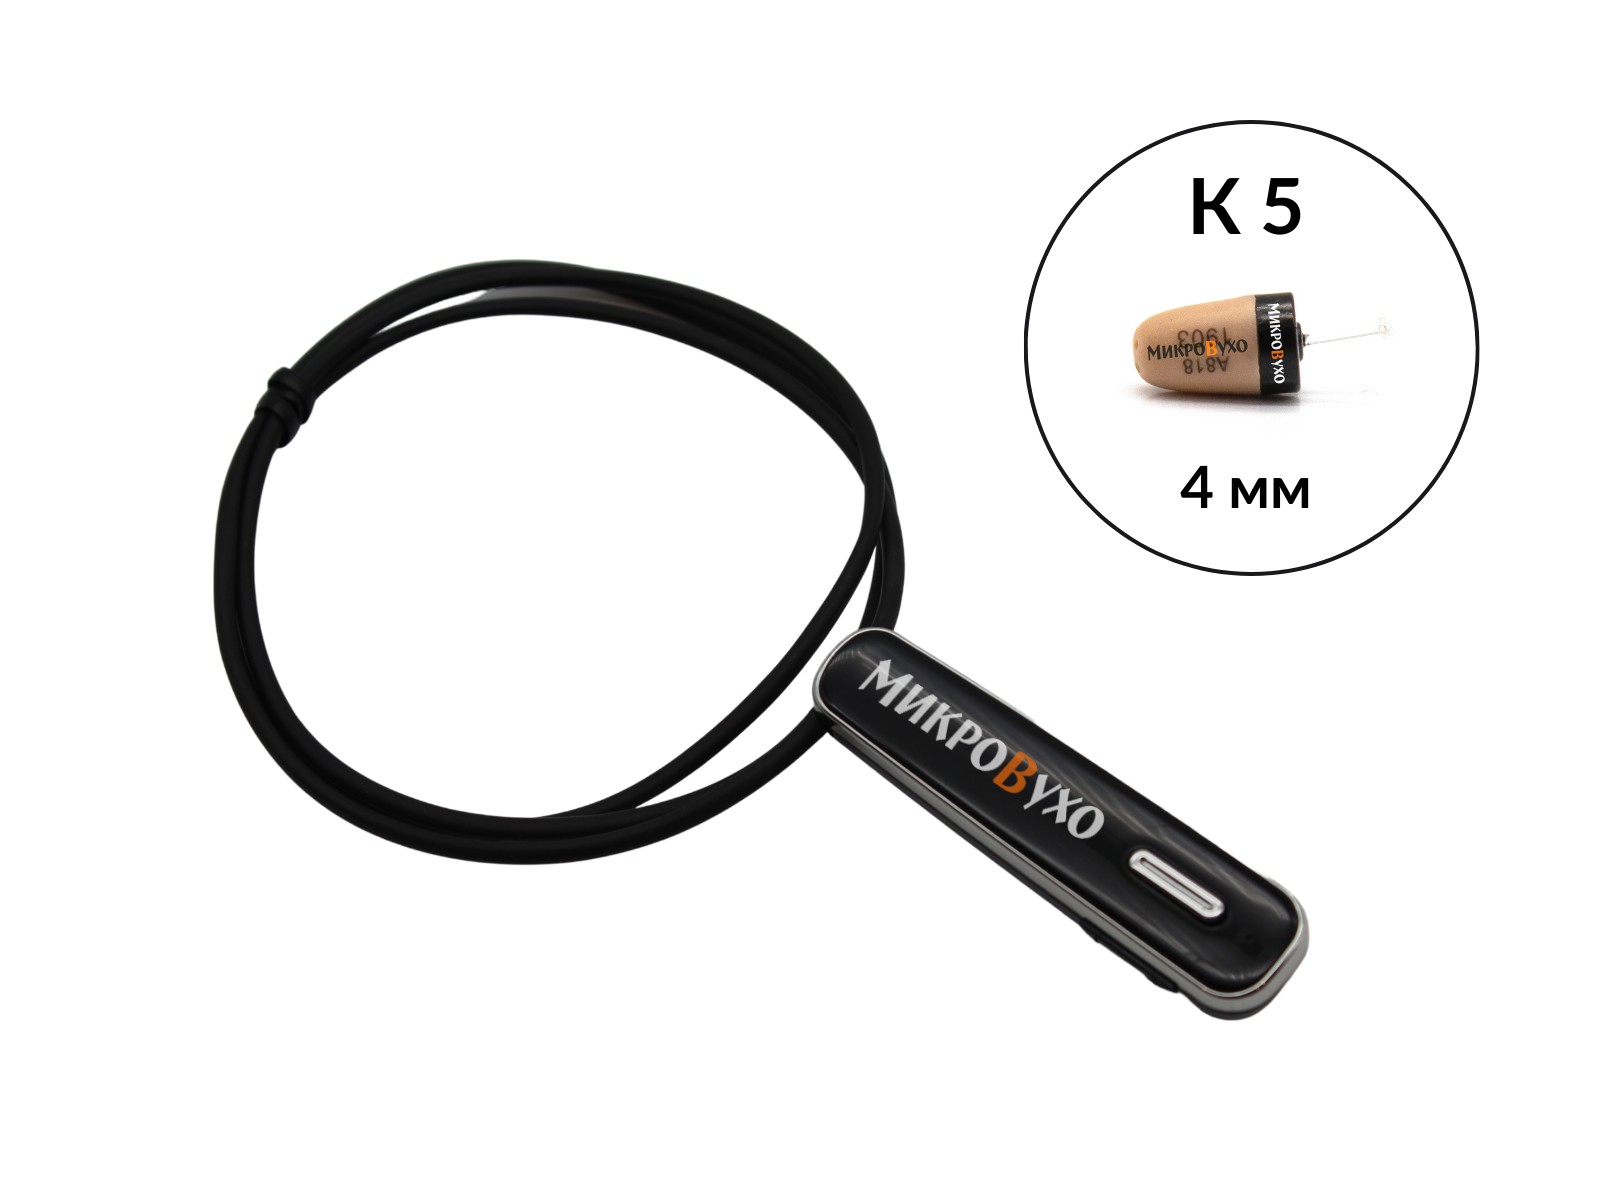 Гарнитура Bluetooth Premier Lite с капсульным микронаушником K5 4 мм 1